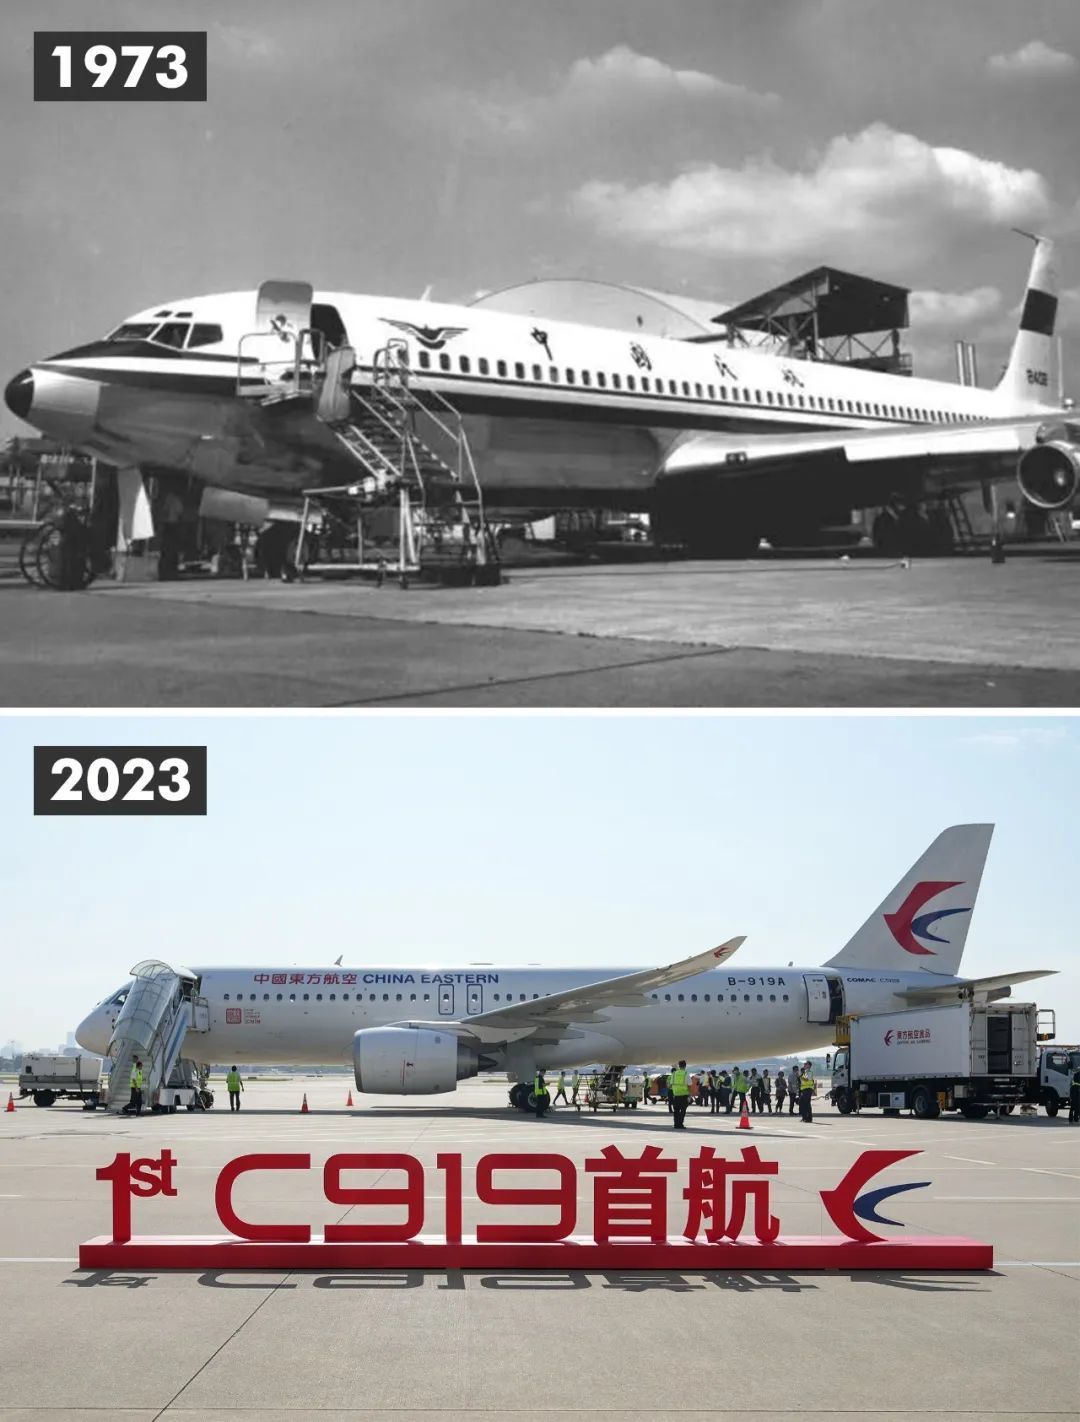 1973年8月，中国接收首架订购的波音707客机，标志着中国民航开启了现代化发展的新篇章。 2023年5月，国产大飞机C919执飞的首个商业航班东航MU9191从上海虹桥国际机场起飞。